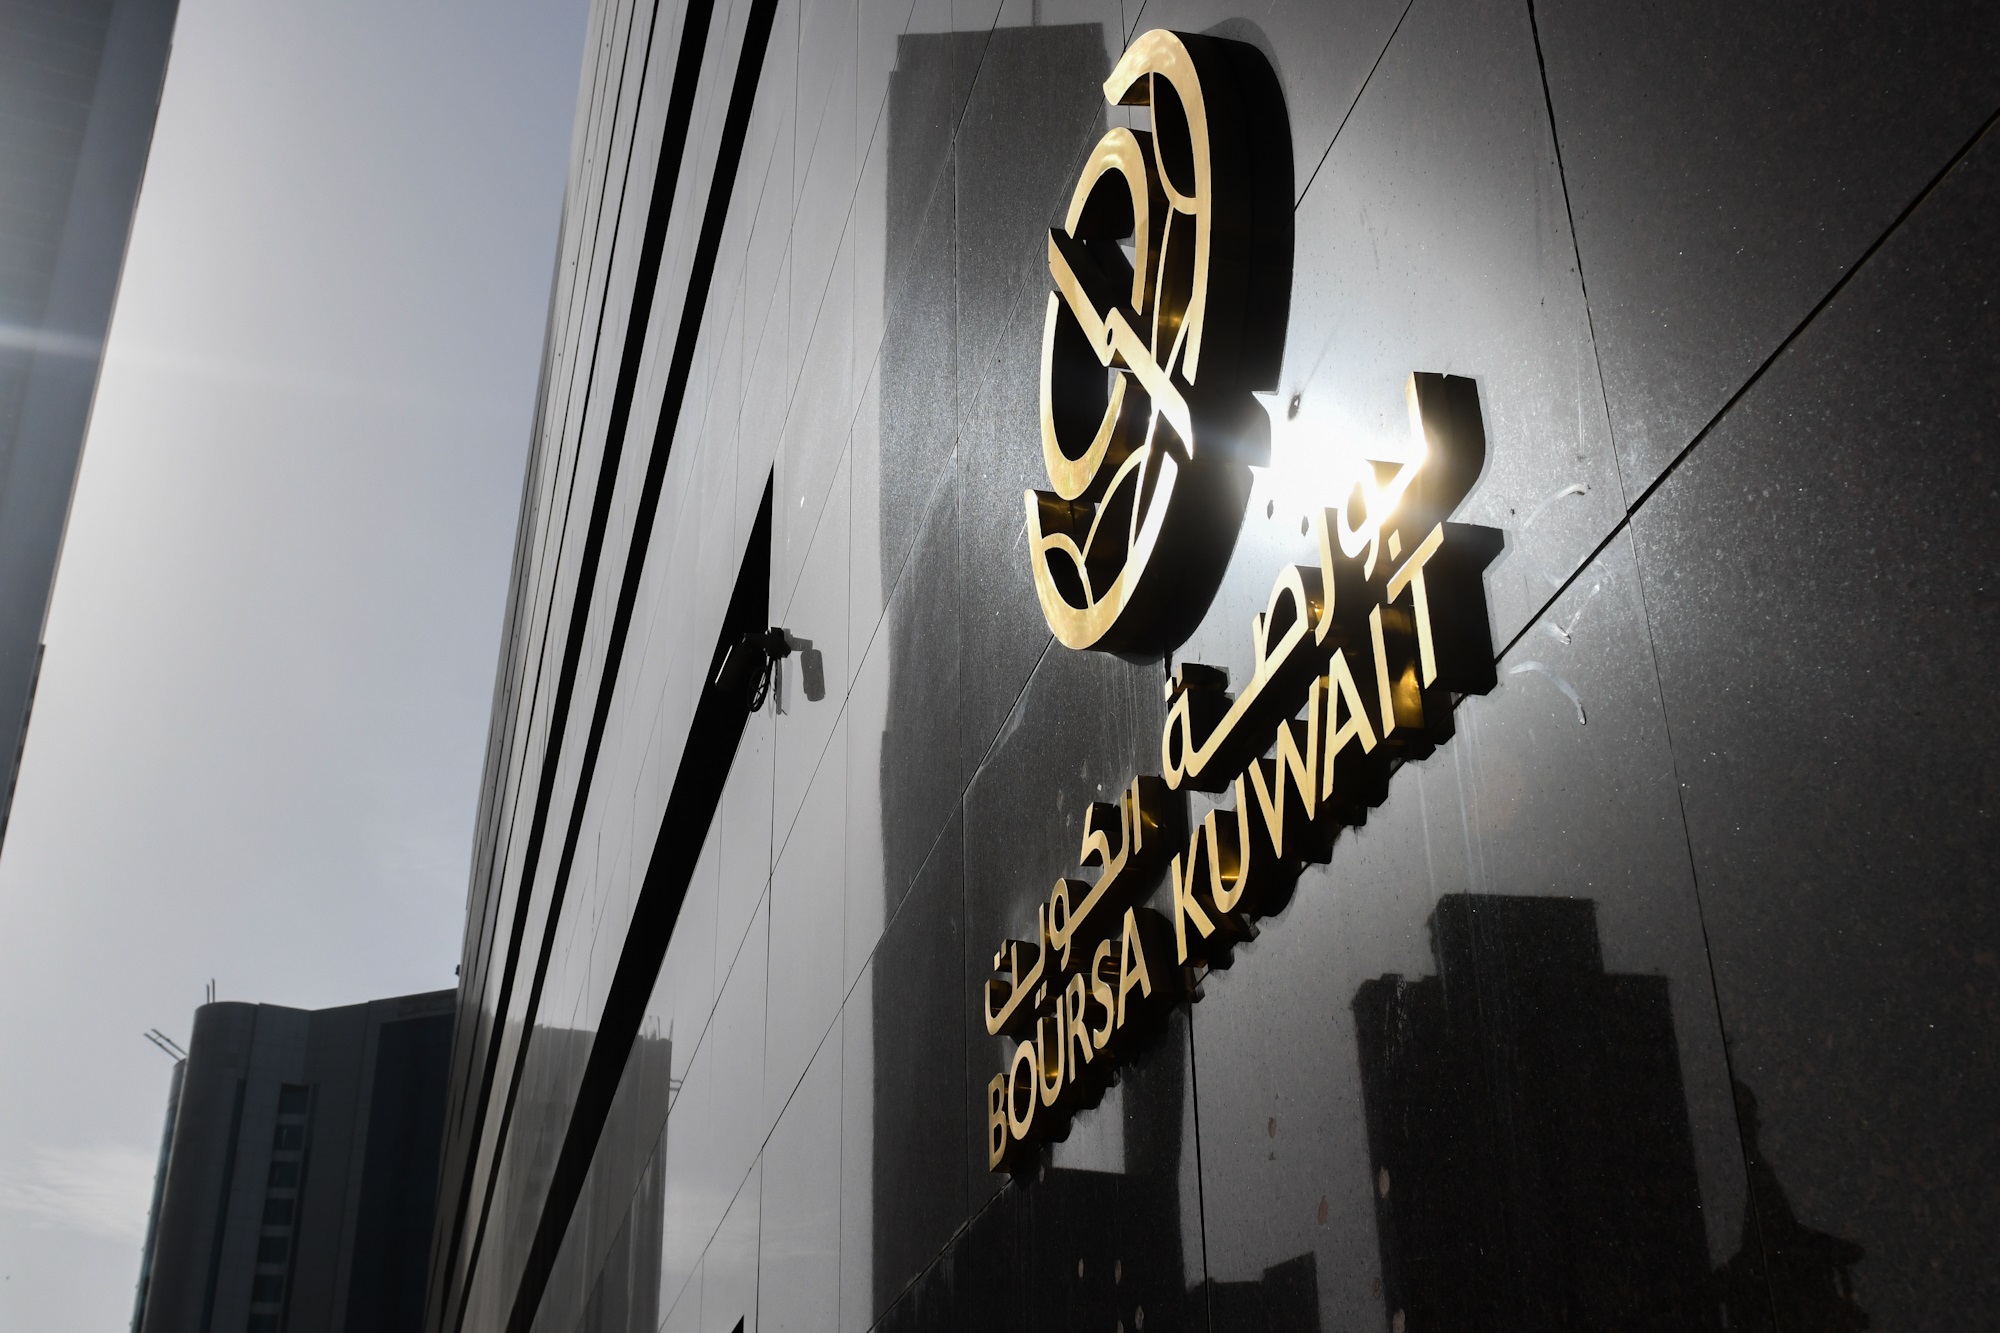 بورصة الكويت تغلق تعاملاتها على ارتفاع مؤشرها العام 6ر5 نقطة ليبلغ 5ر7390 بنسبة 08ر0 في المئة